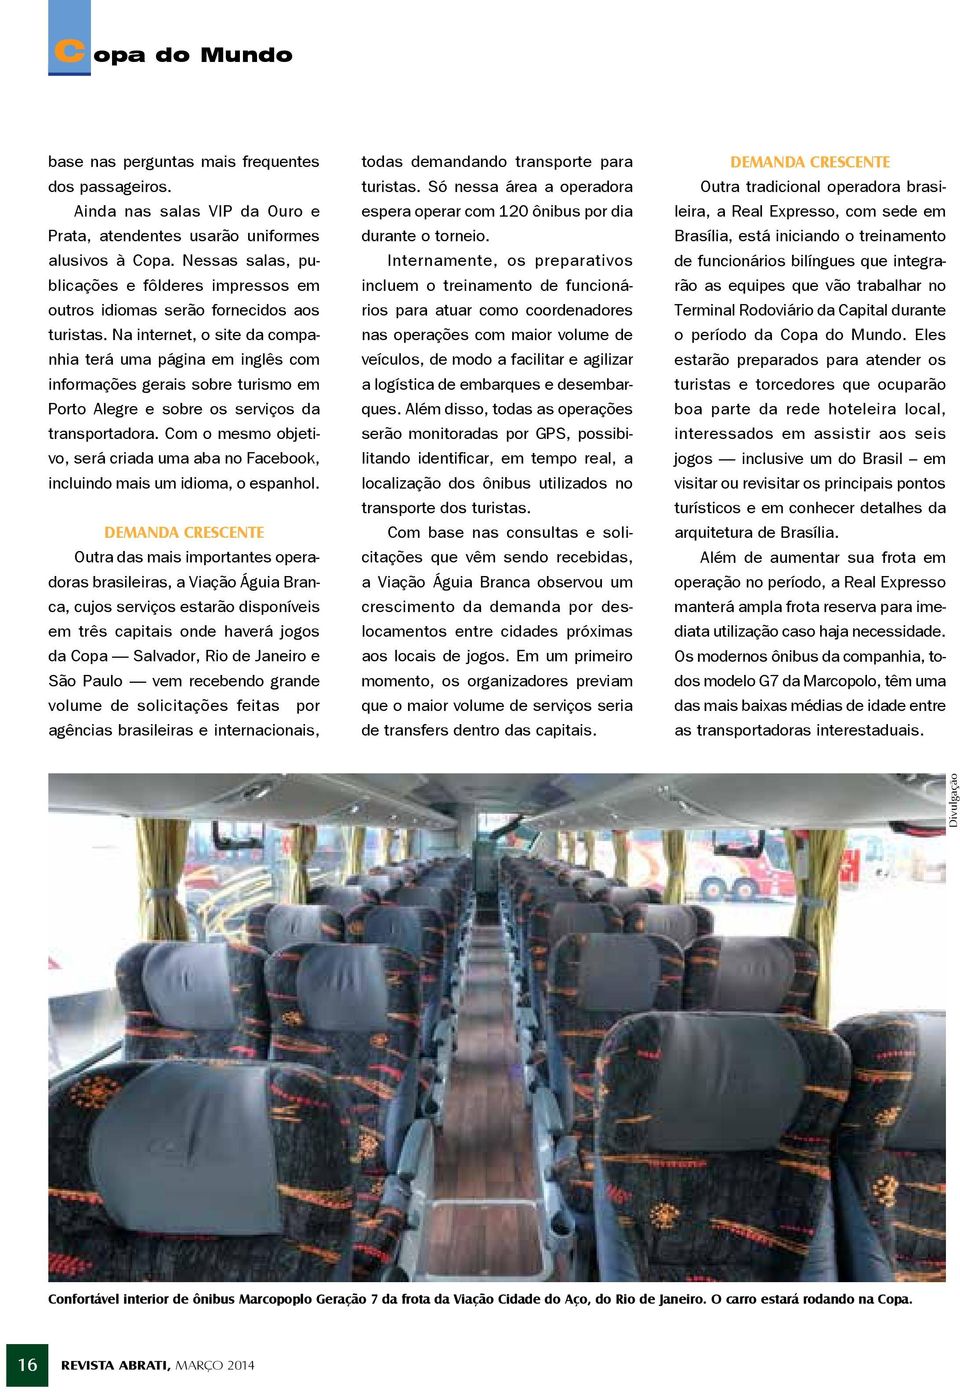 Na internet, o site da companhia terá uma página em inglês com informações gerais sobre turismo em Porto Alegre e sobre os serviços da transportadora.